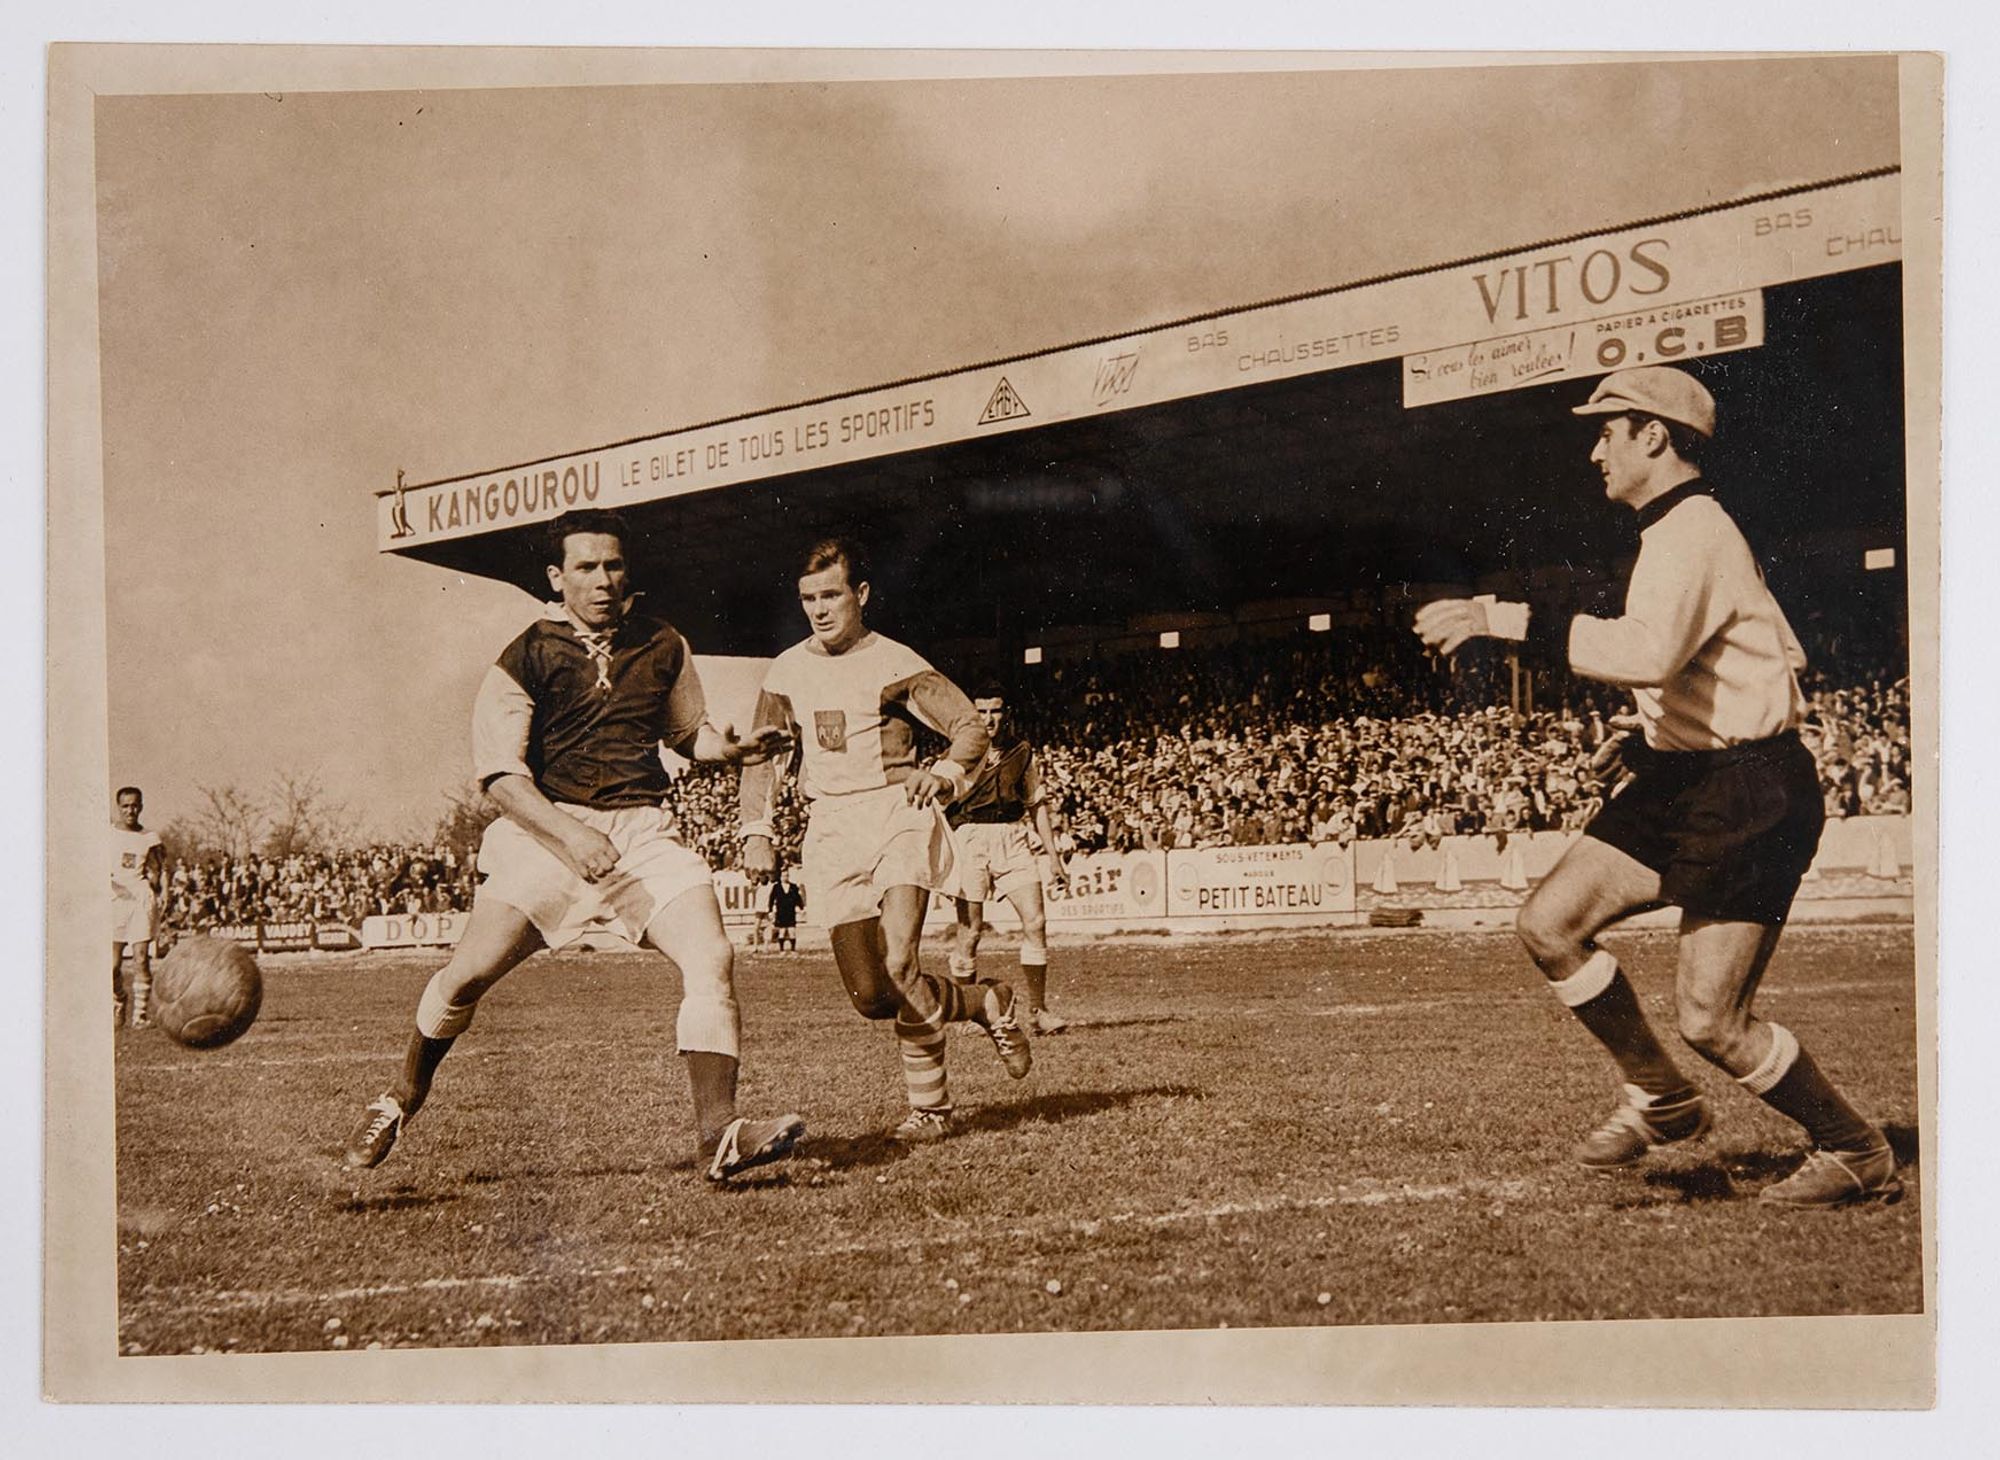 Match de l'Association sportive Troyes-Sainte-Savines du 1er mai 1955 contre Toulouse. Victoire de Troyes 2-1.